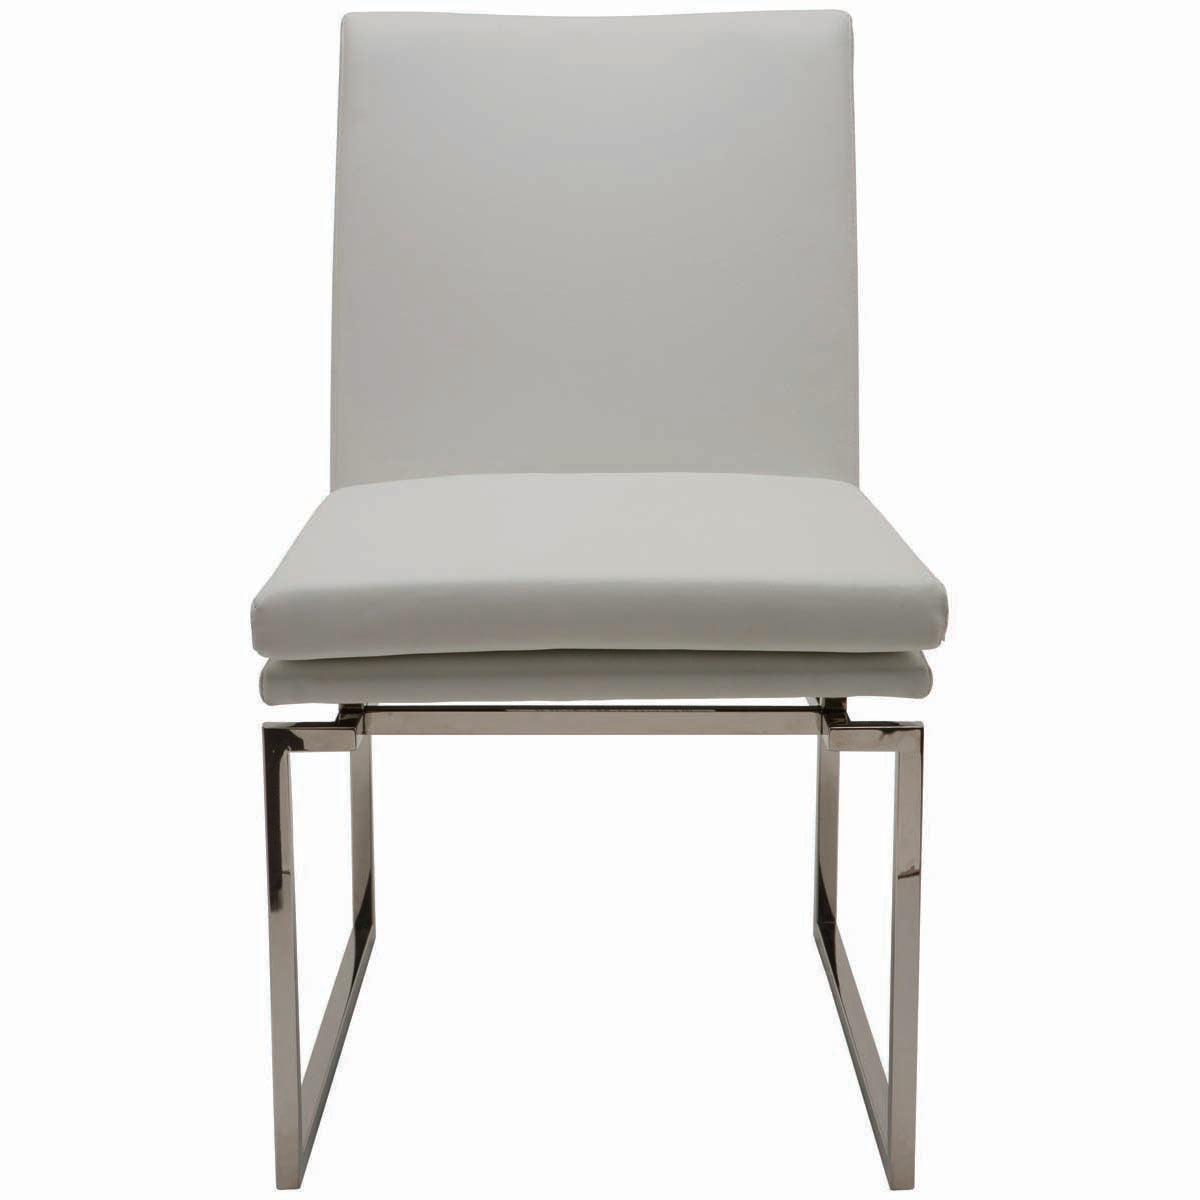 Nuevo Savine Dining Chair - White